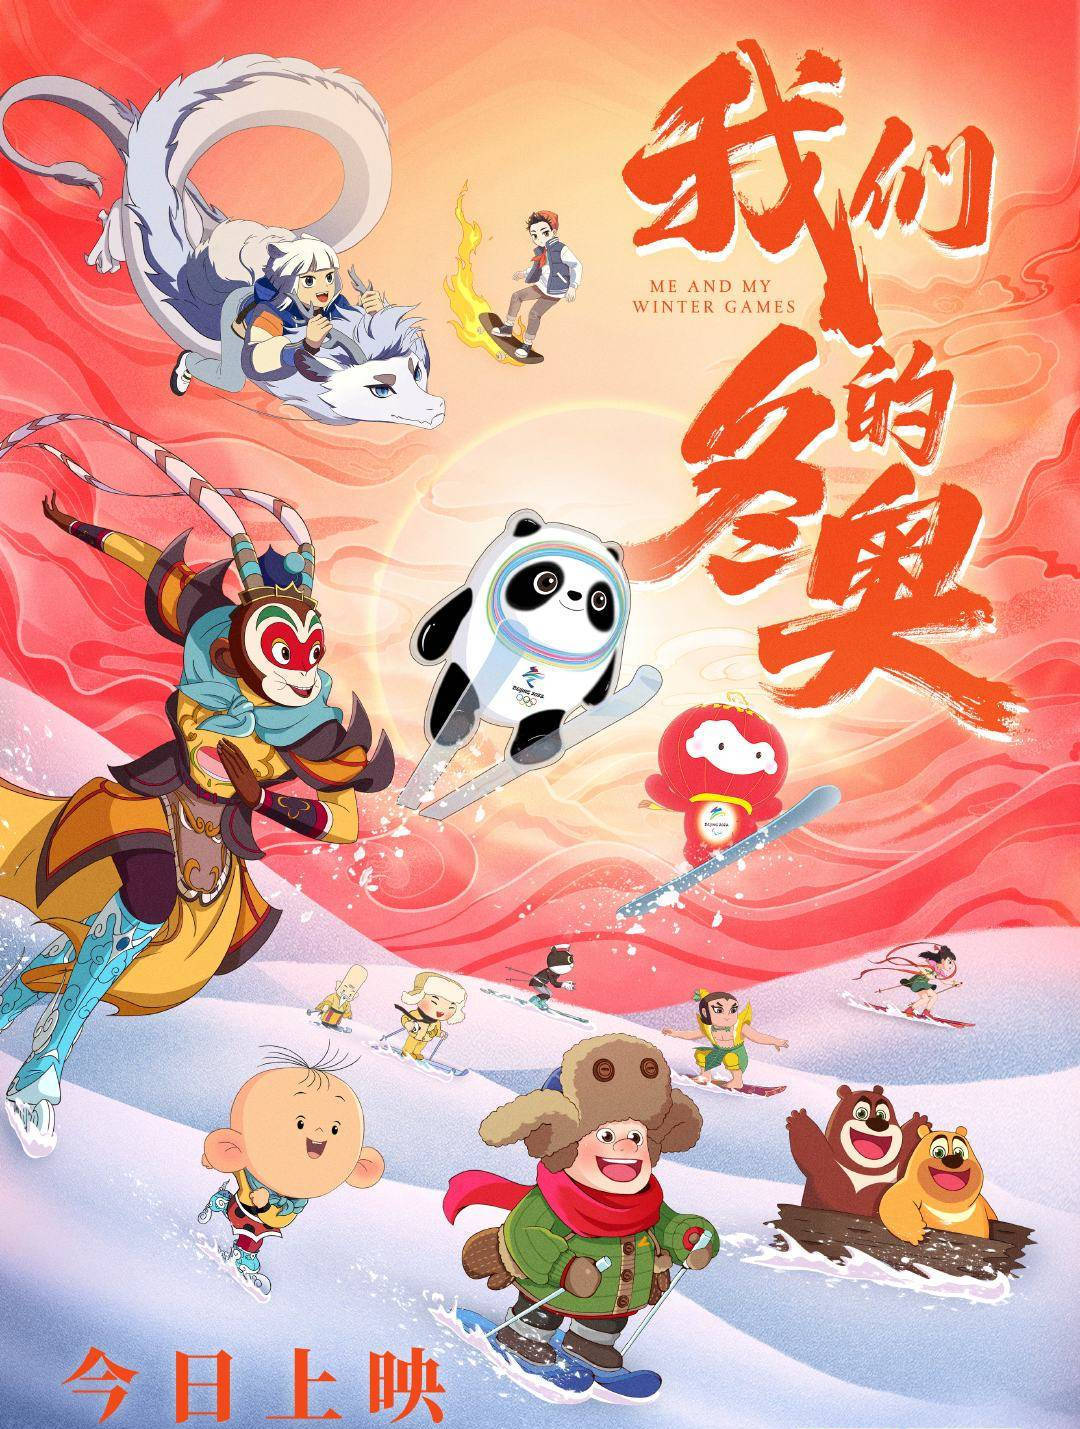 刘亦菲发文支持《我们的冬奥》 该动画电影为冰墩墩雪容融银幕首秀